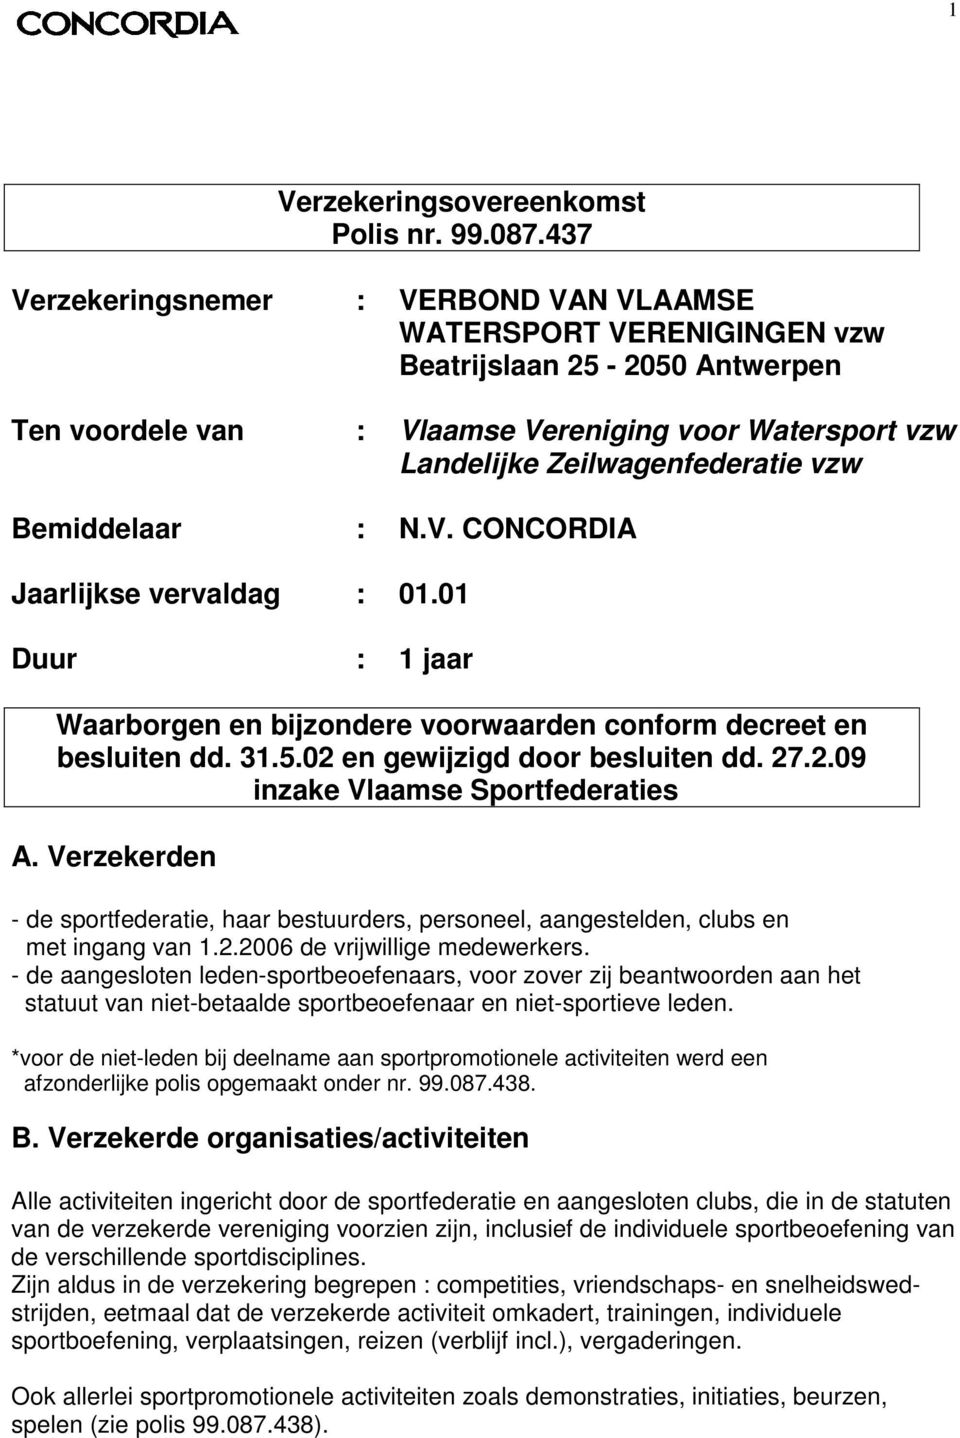 Bemiddelaar : N.V. CONCORDIA Jaarlijkse vervaldag : 01.01 Duur : 1 jaar Waarborgen en bijzondere voorwaarden conform decreet en besluiten dd. 31.5.02 en gewijzigd door besluiten dd. 27.2.09 inzake Vlaamse Sportfederaties A.